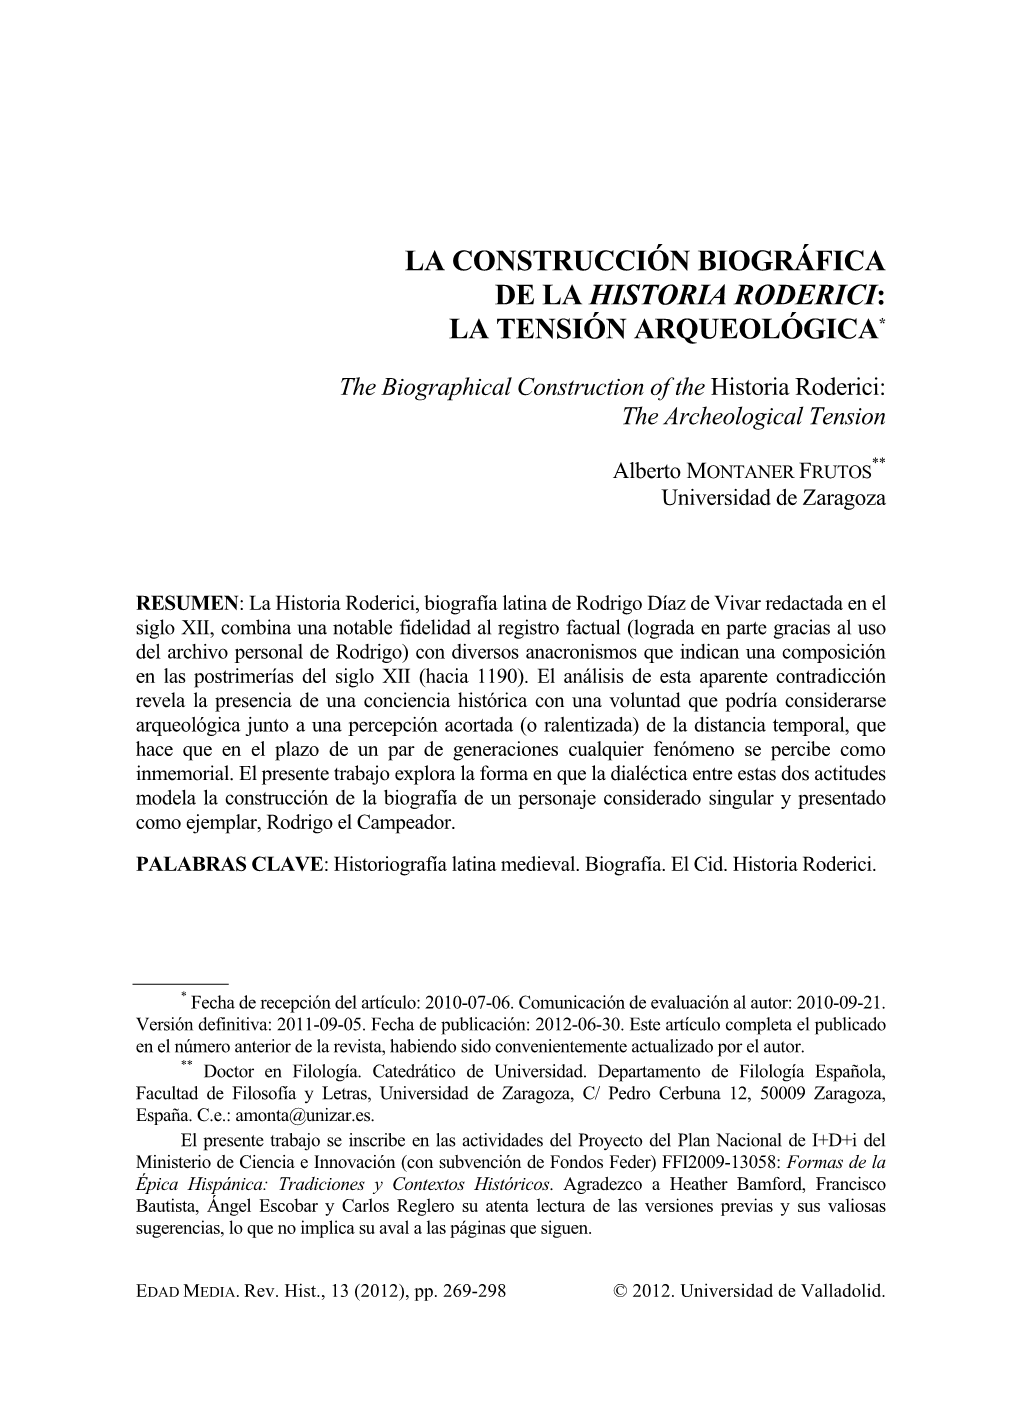 La Construcción Biográfica De La Historia Roderici: La Tensión Arqueológica*